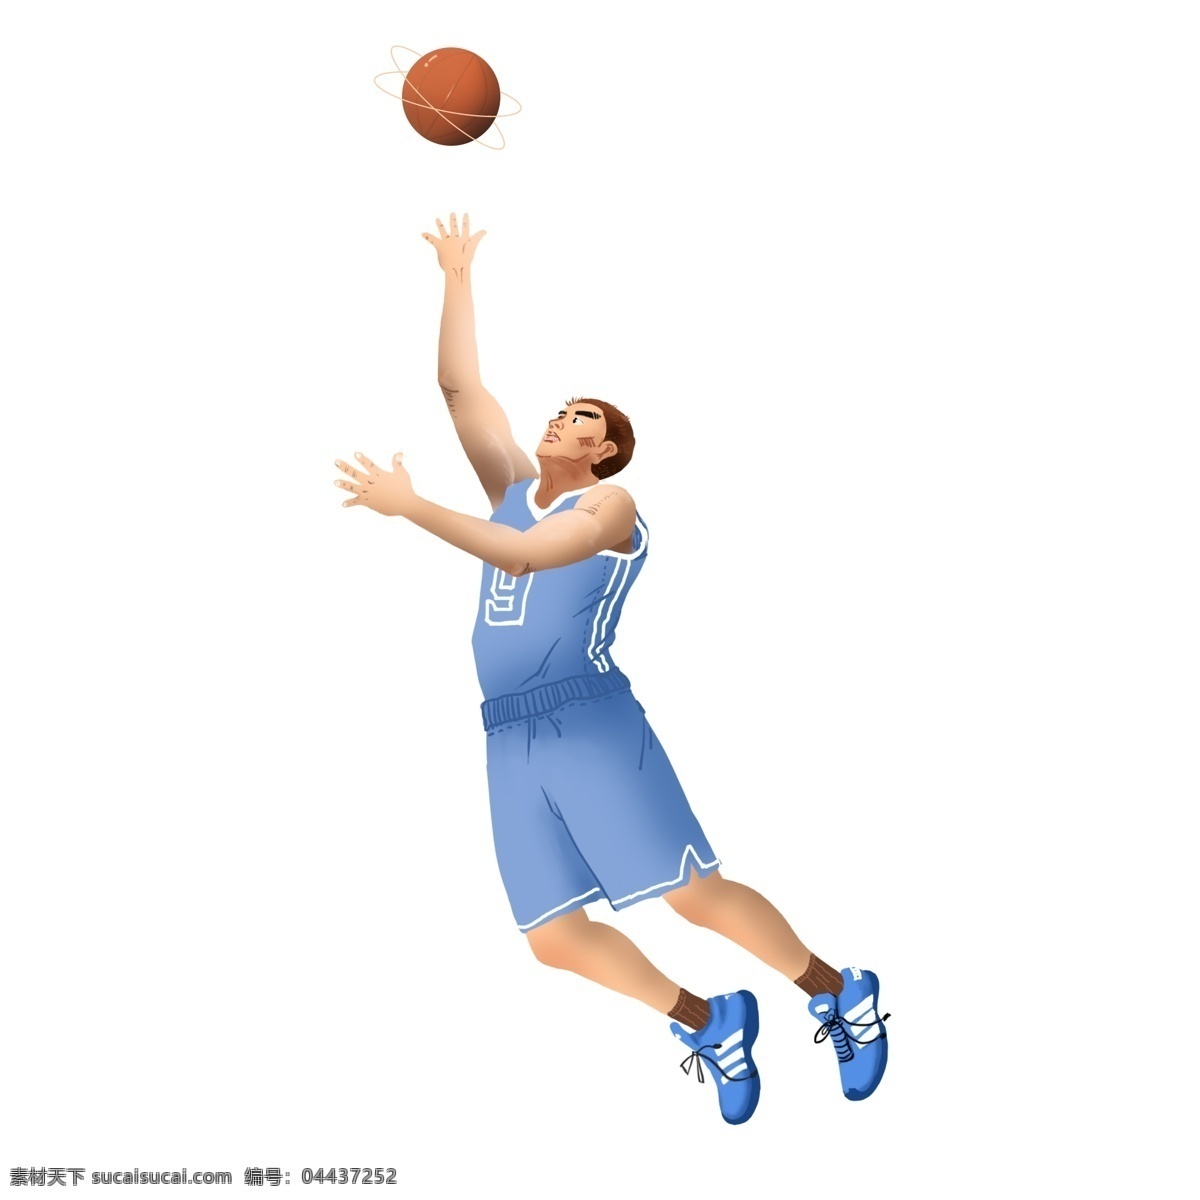 篮球 nba 球员 抢 球 蓝色 队服 打球 跳跃 蓝色队服 抢球